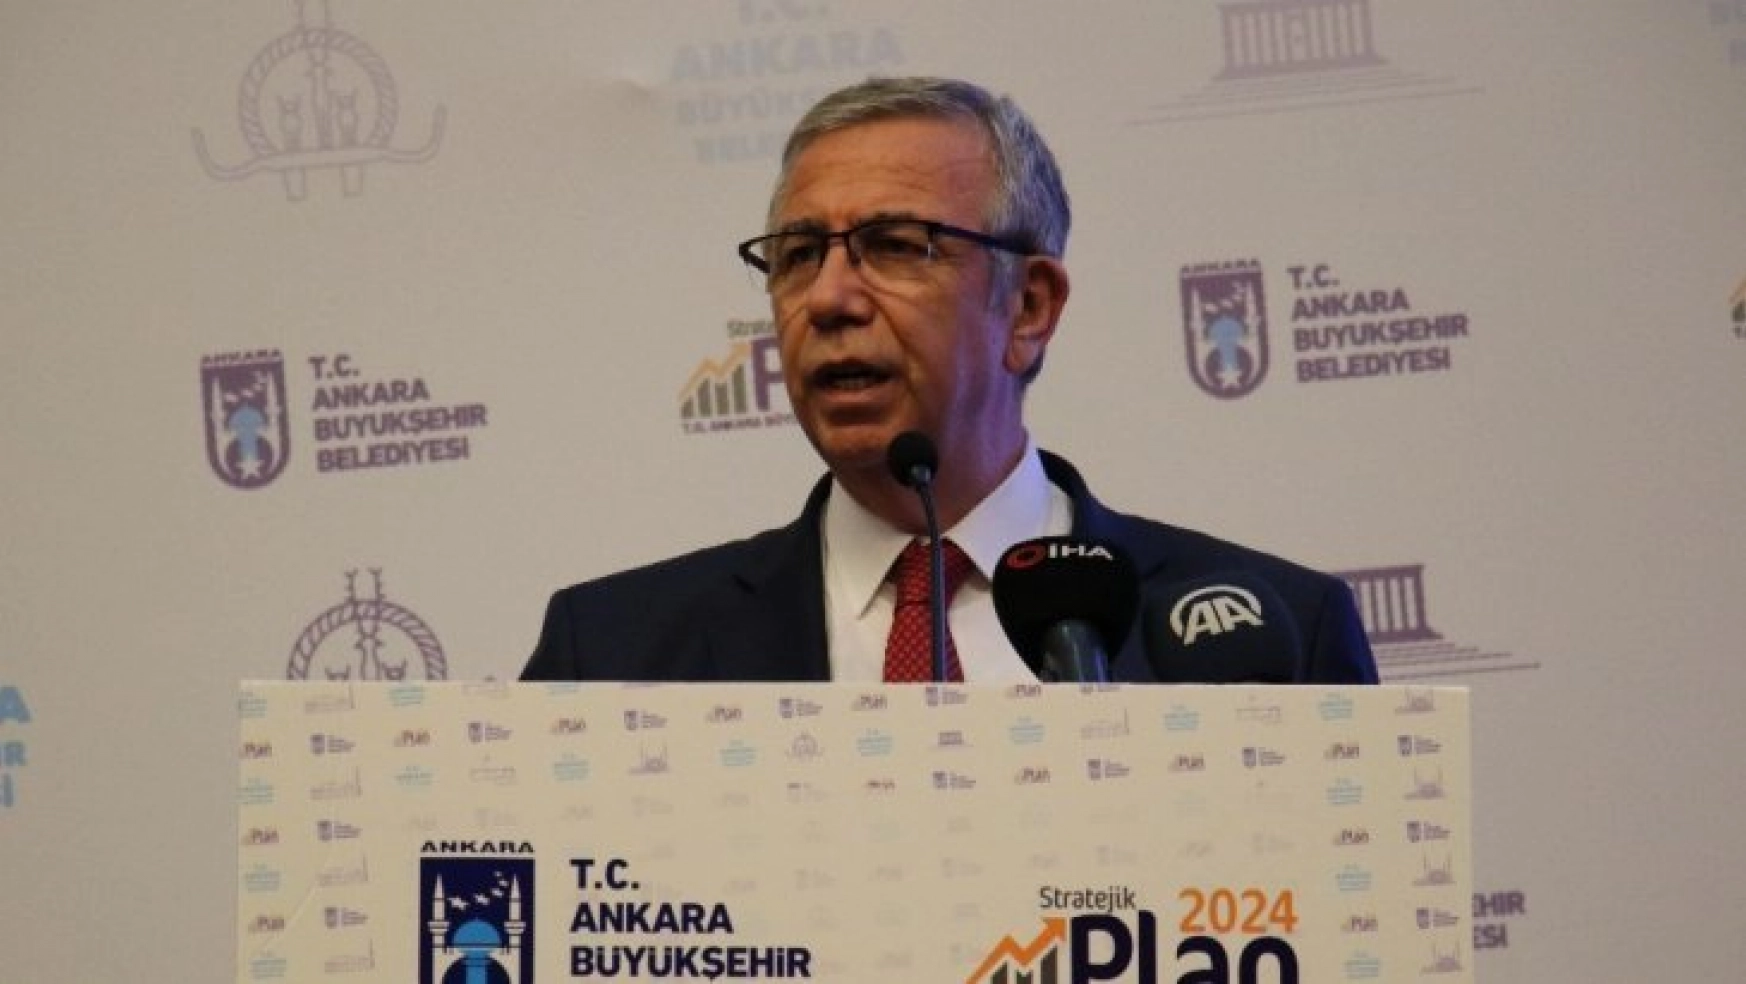 Ankara Büyükşehir Belediyesinde Stratejik Plan toplantısı